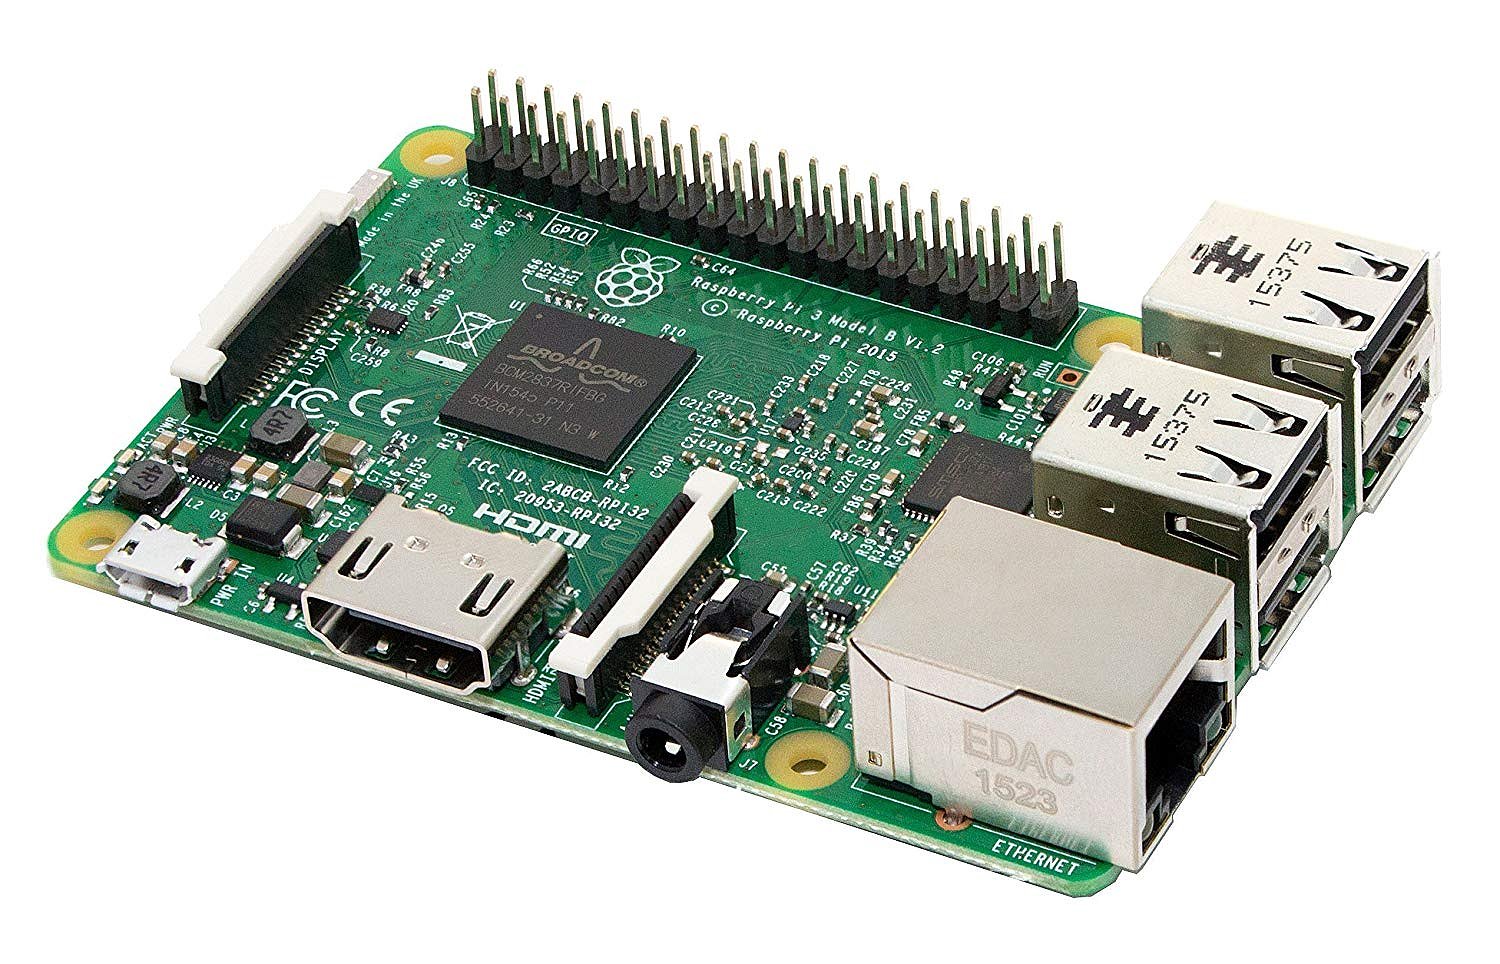 Introducción a Raspeberry Pi e interacción con módulos digitales